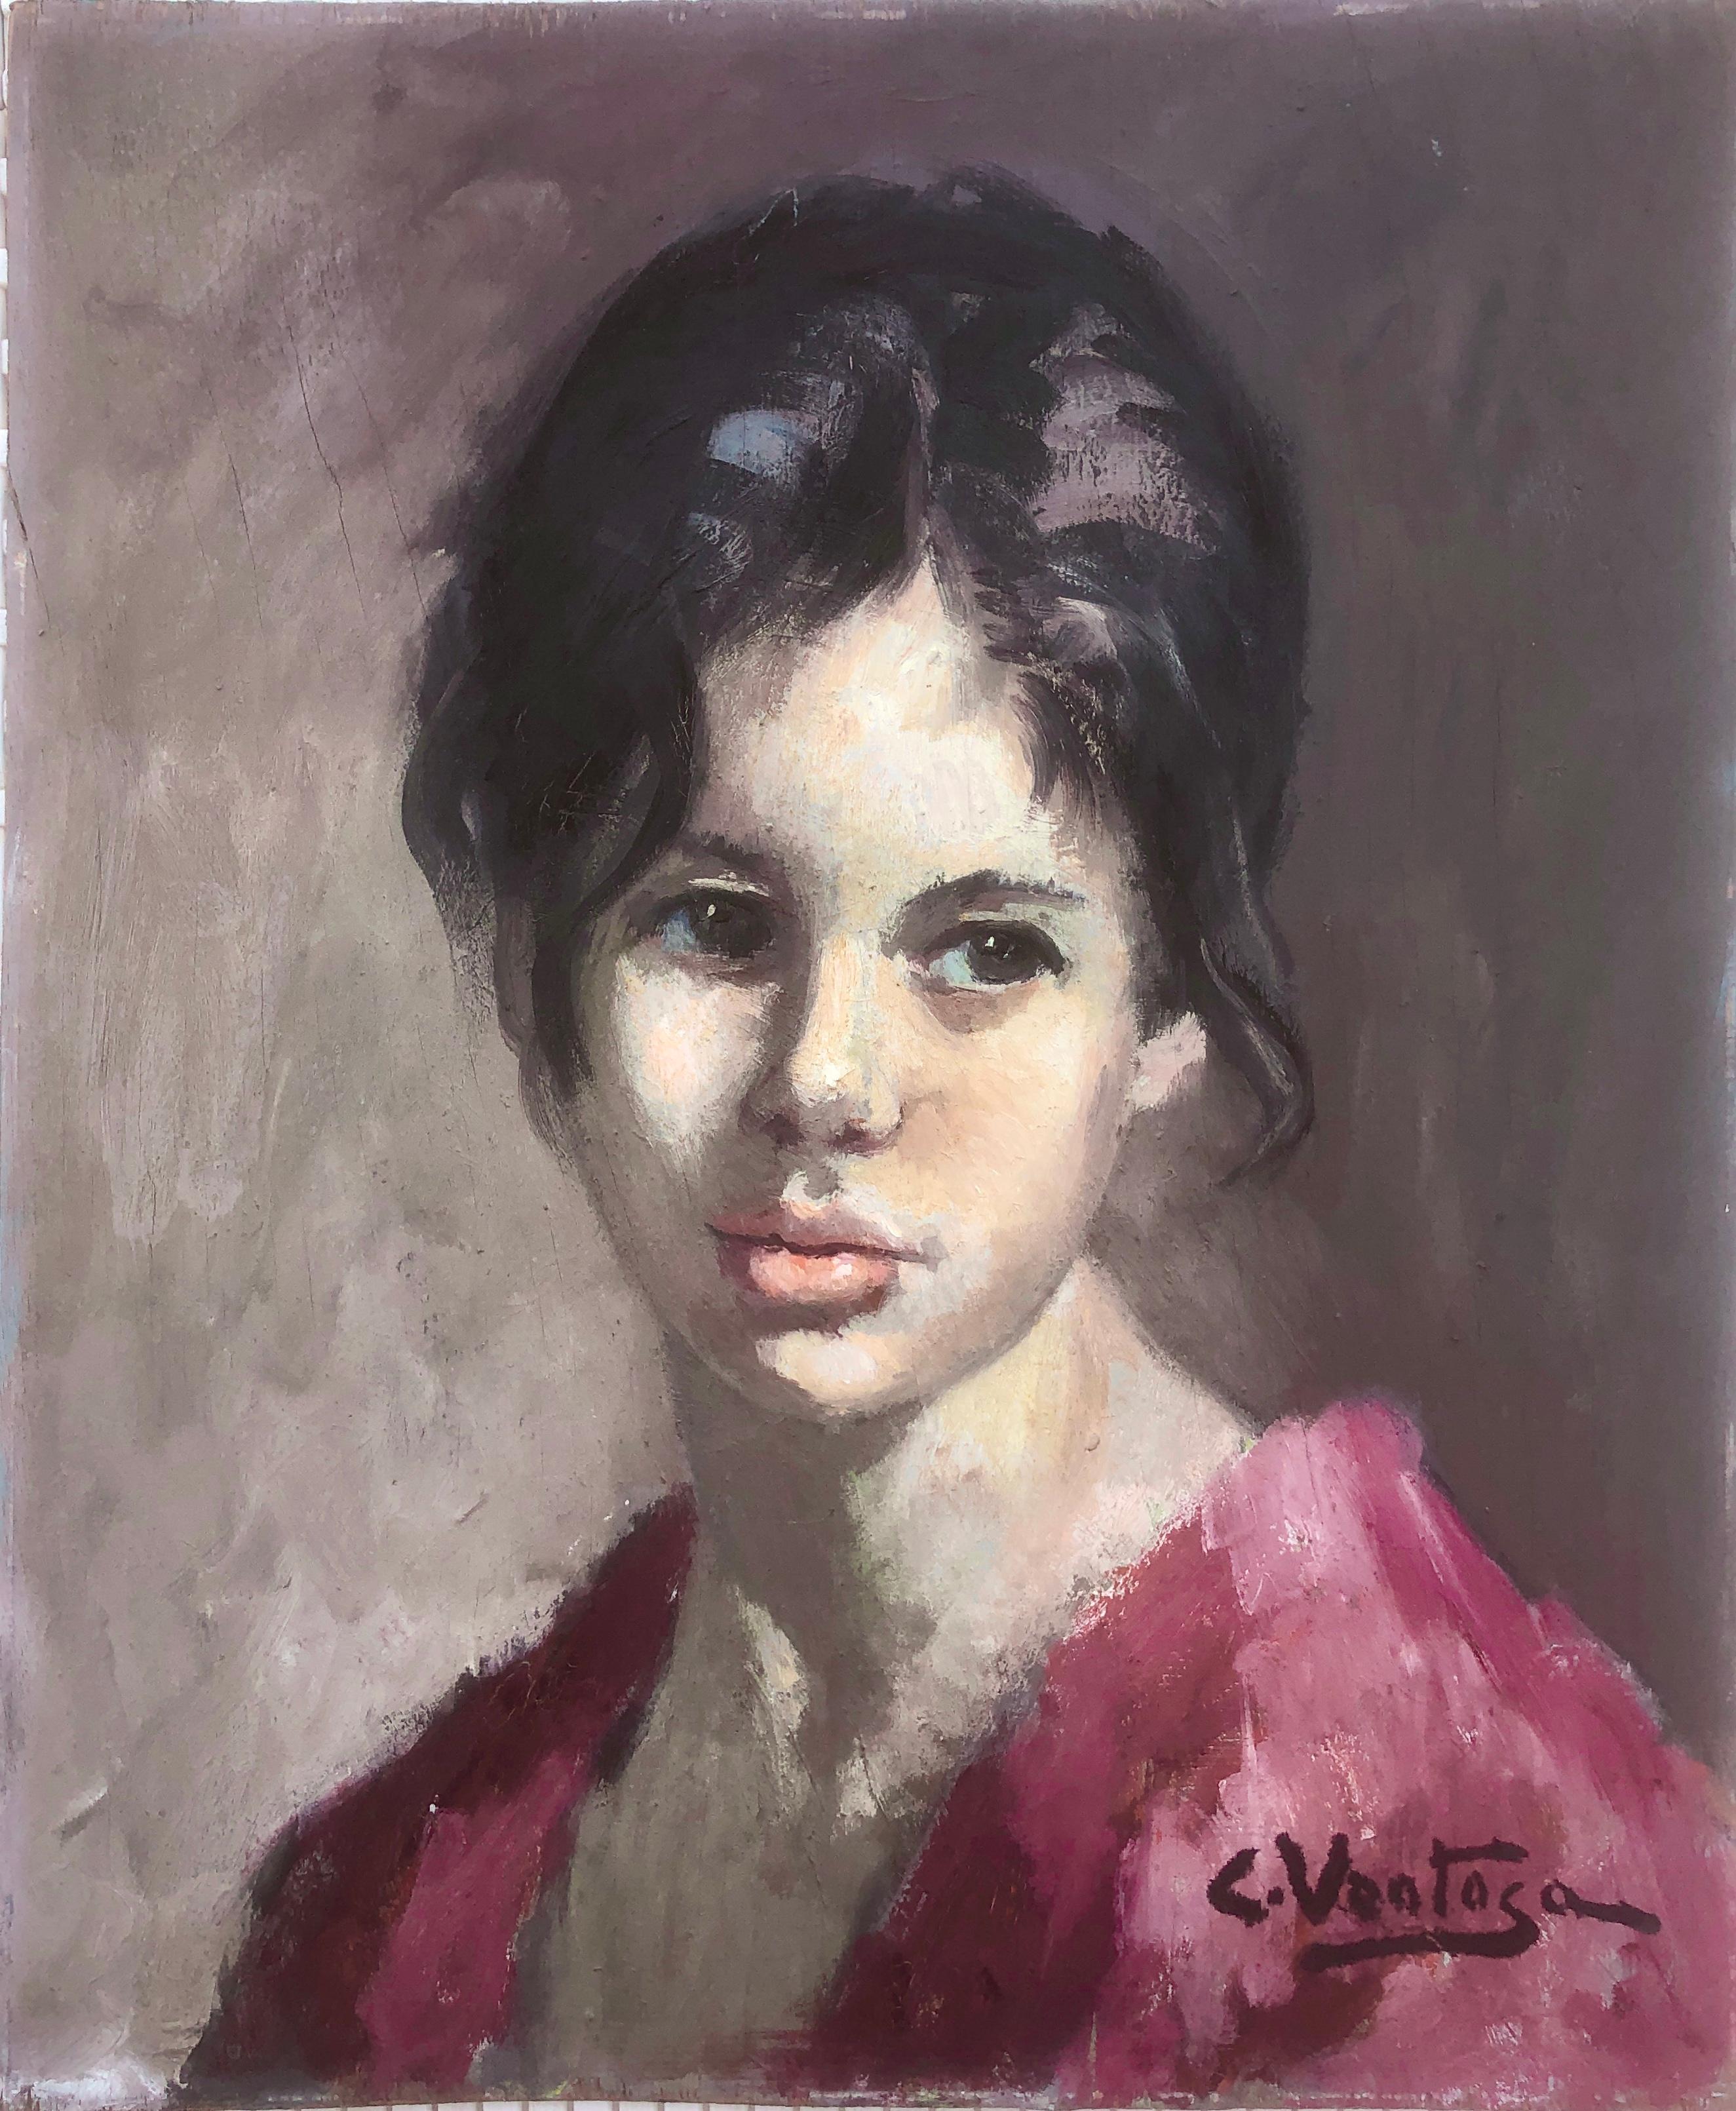 Carmen Ventosa Portrait Painting – Porträt eines jungen Mädchens, Öl auf Leinwand, Gemälde